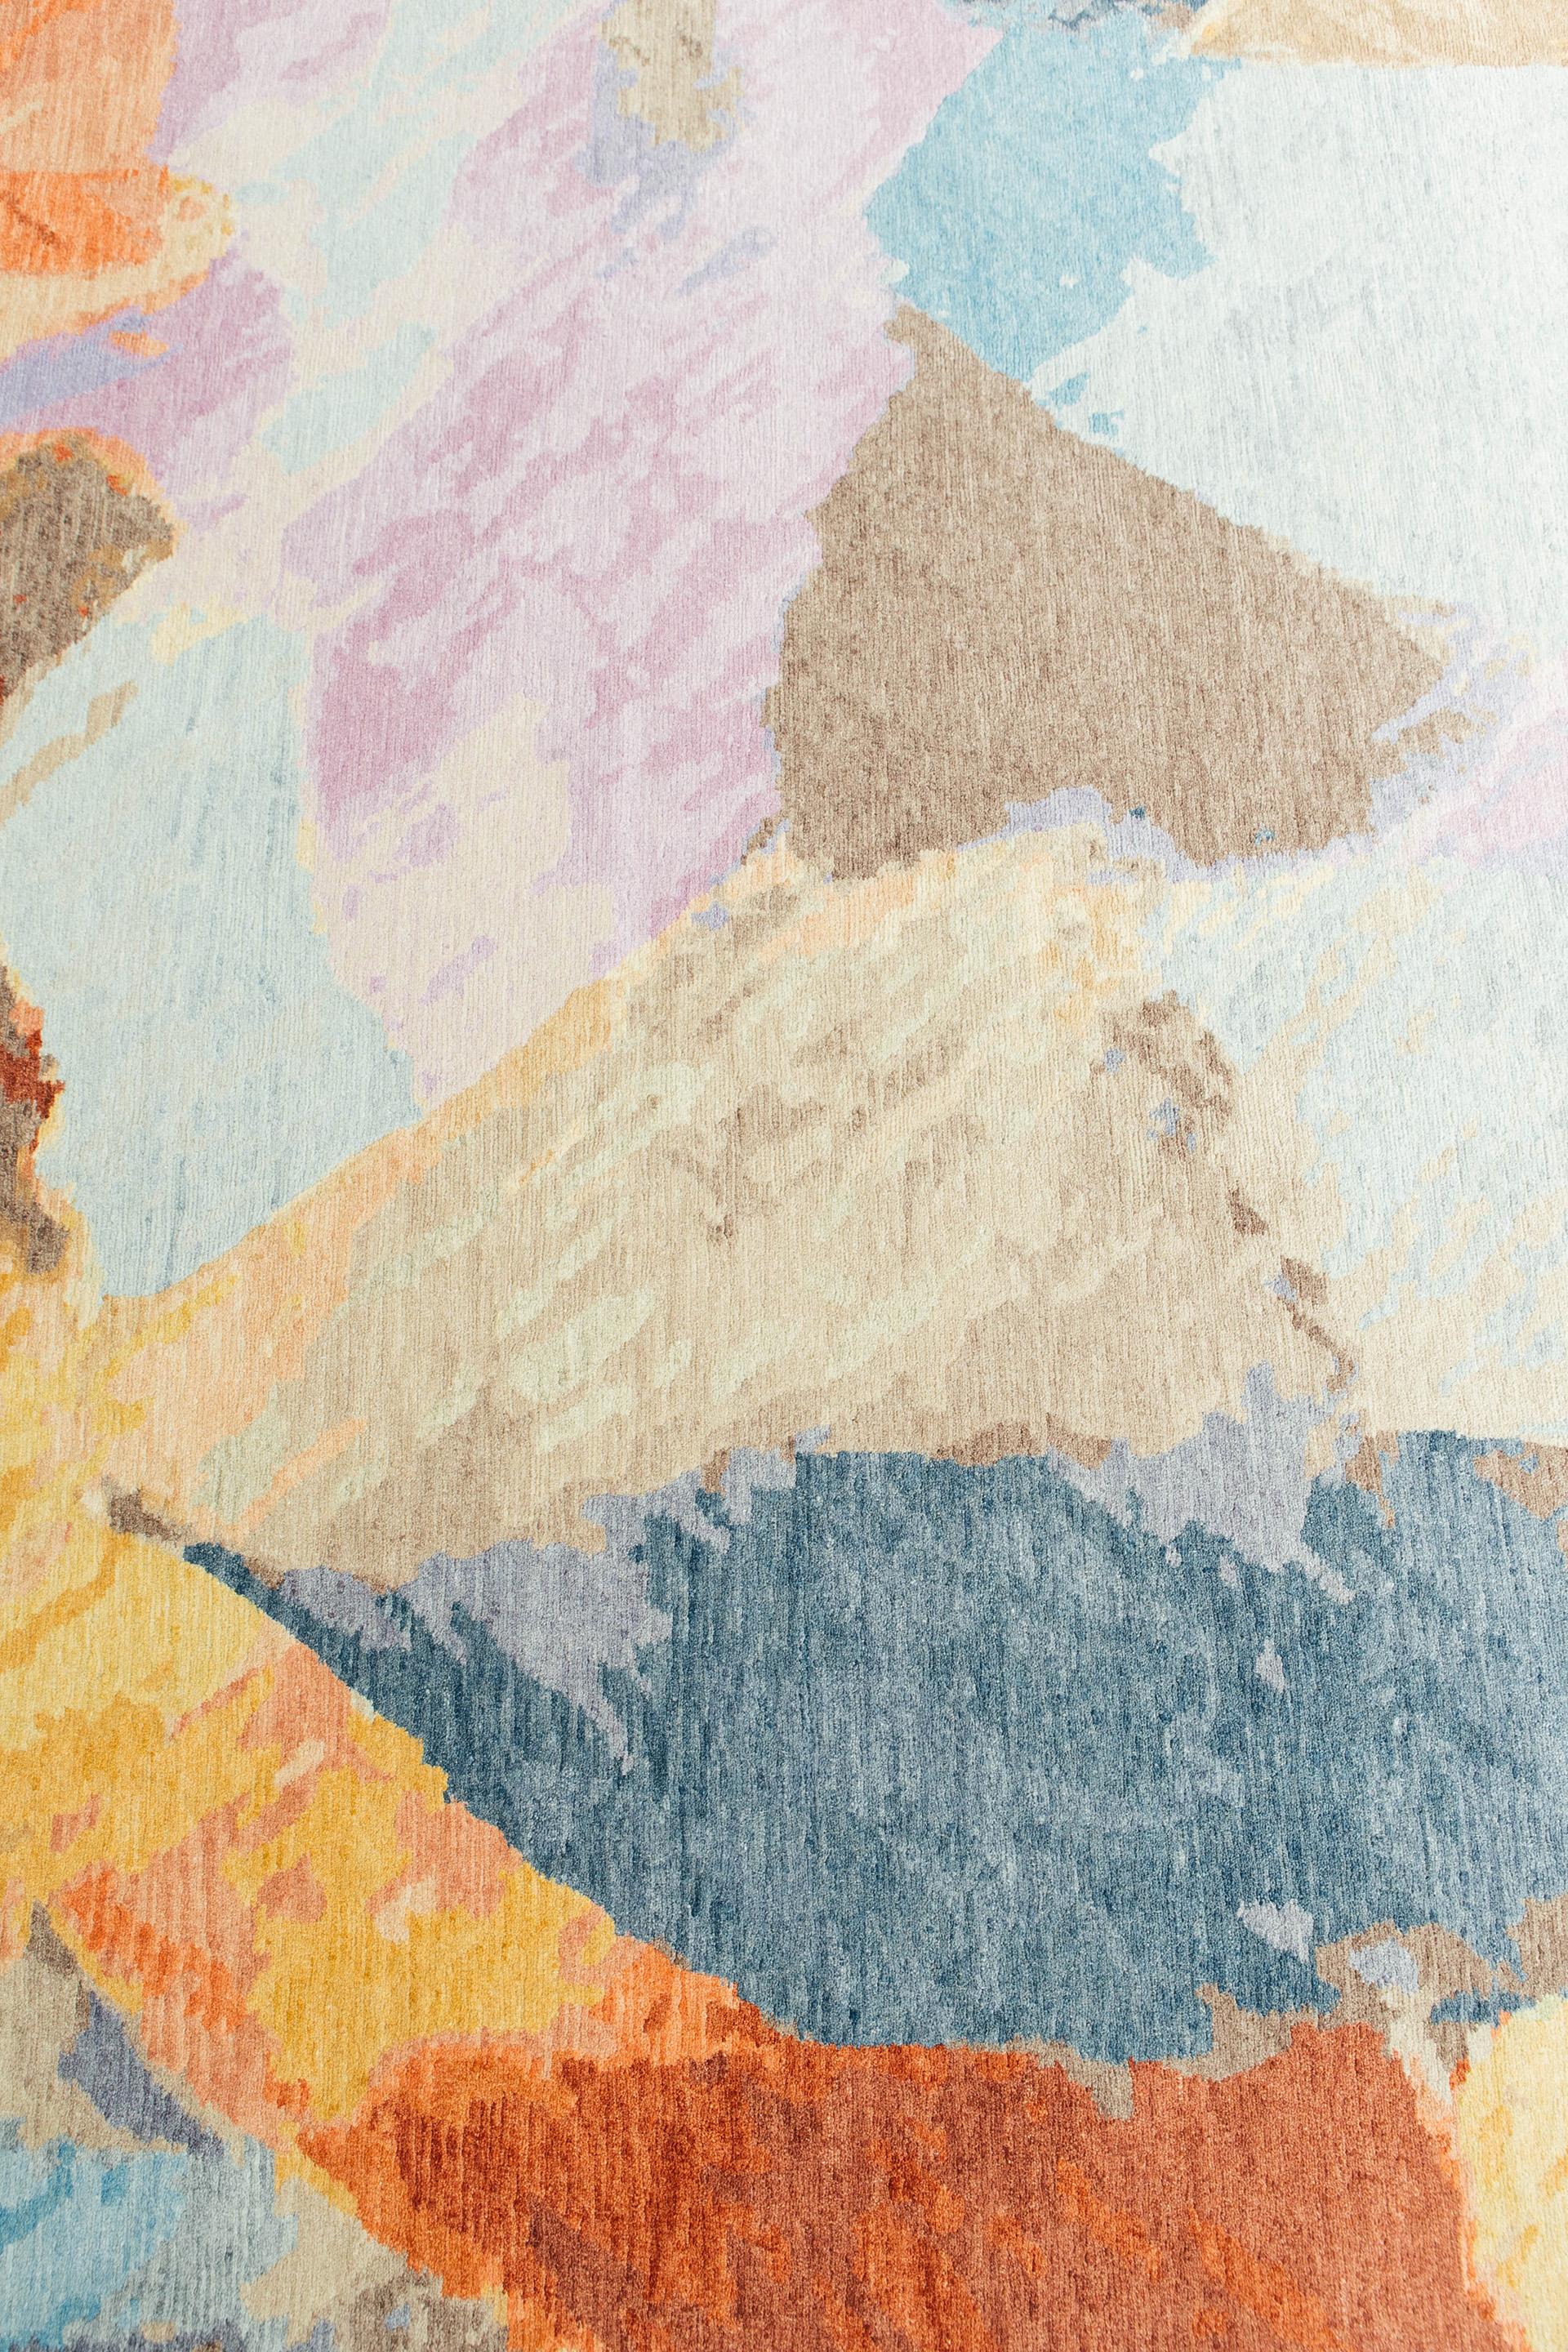 Summer Overlook est un tapis vibrant et accrocheur qui tisse des pastels vifs et des touches ludiques pour créer des formes abstraites. Ce tapis unique en laine et en soie est une pièce unique qui laisse une impression durable.

Numéro de tapis